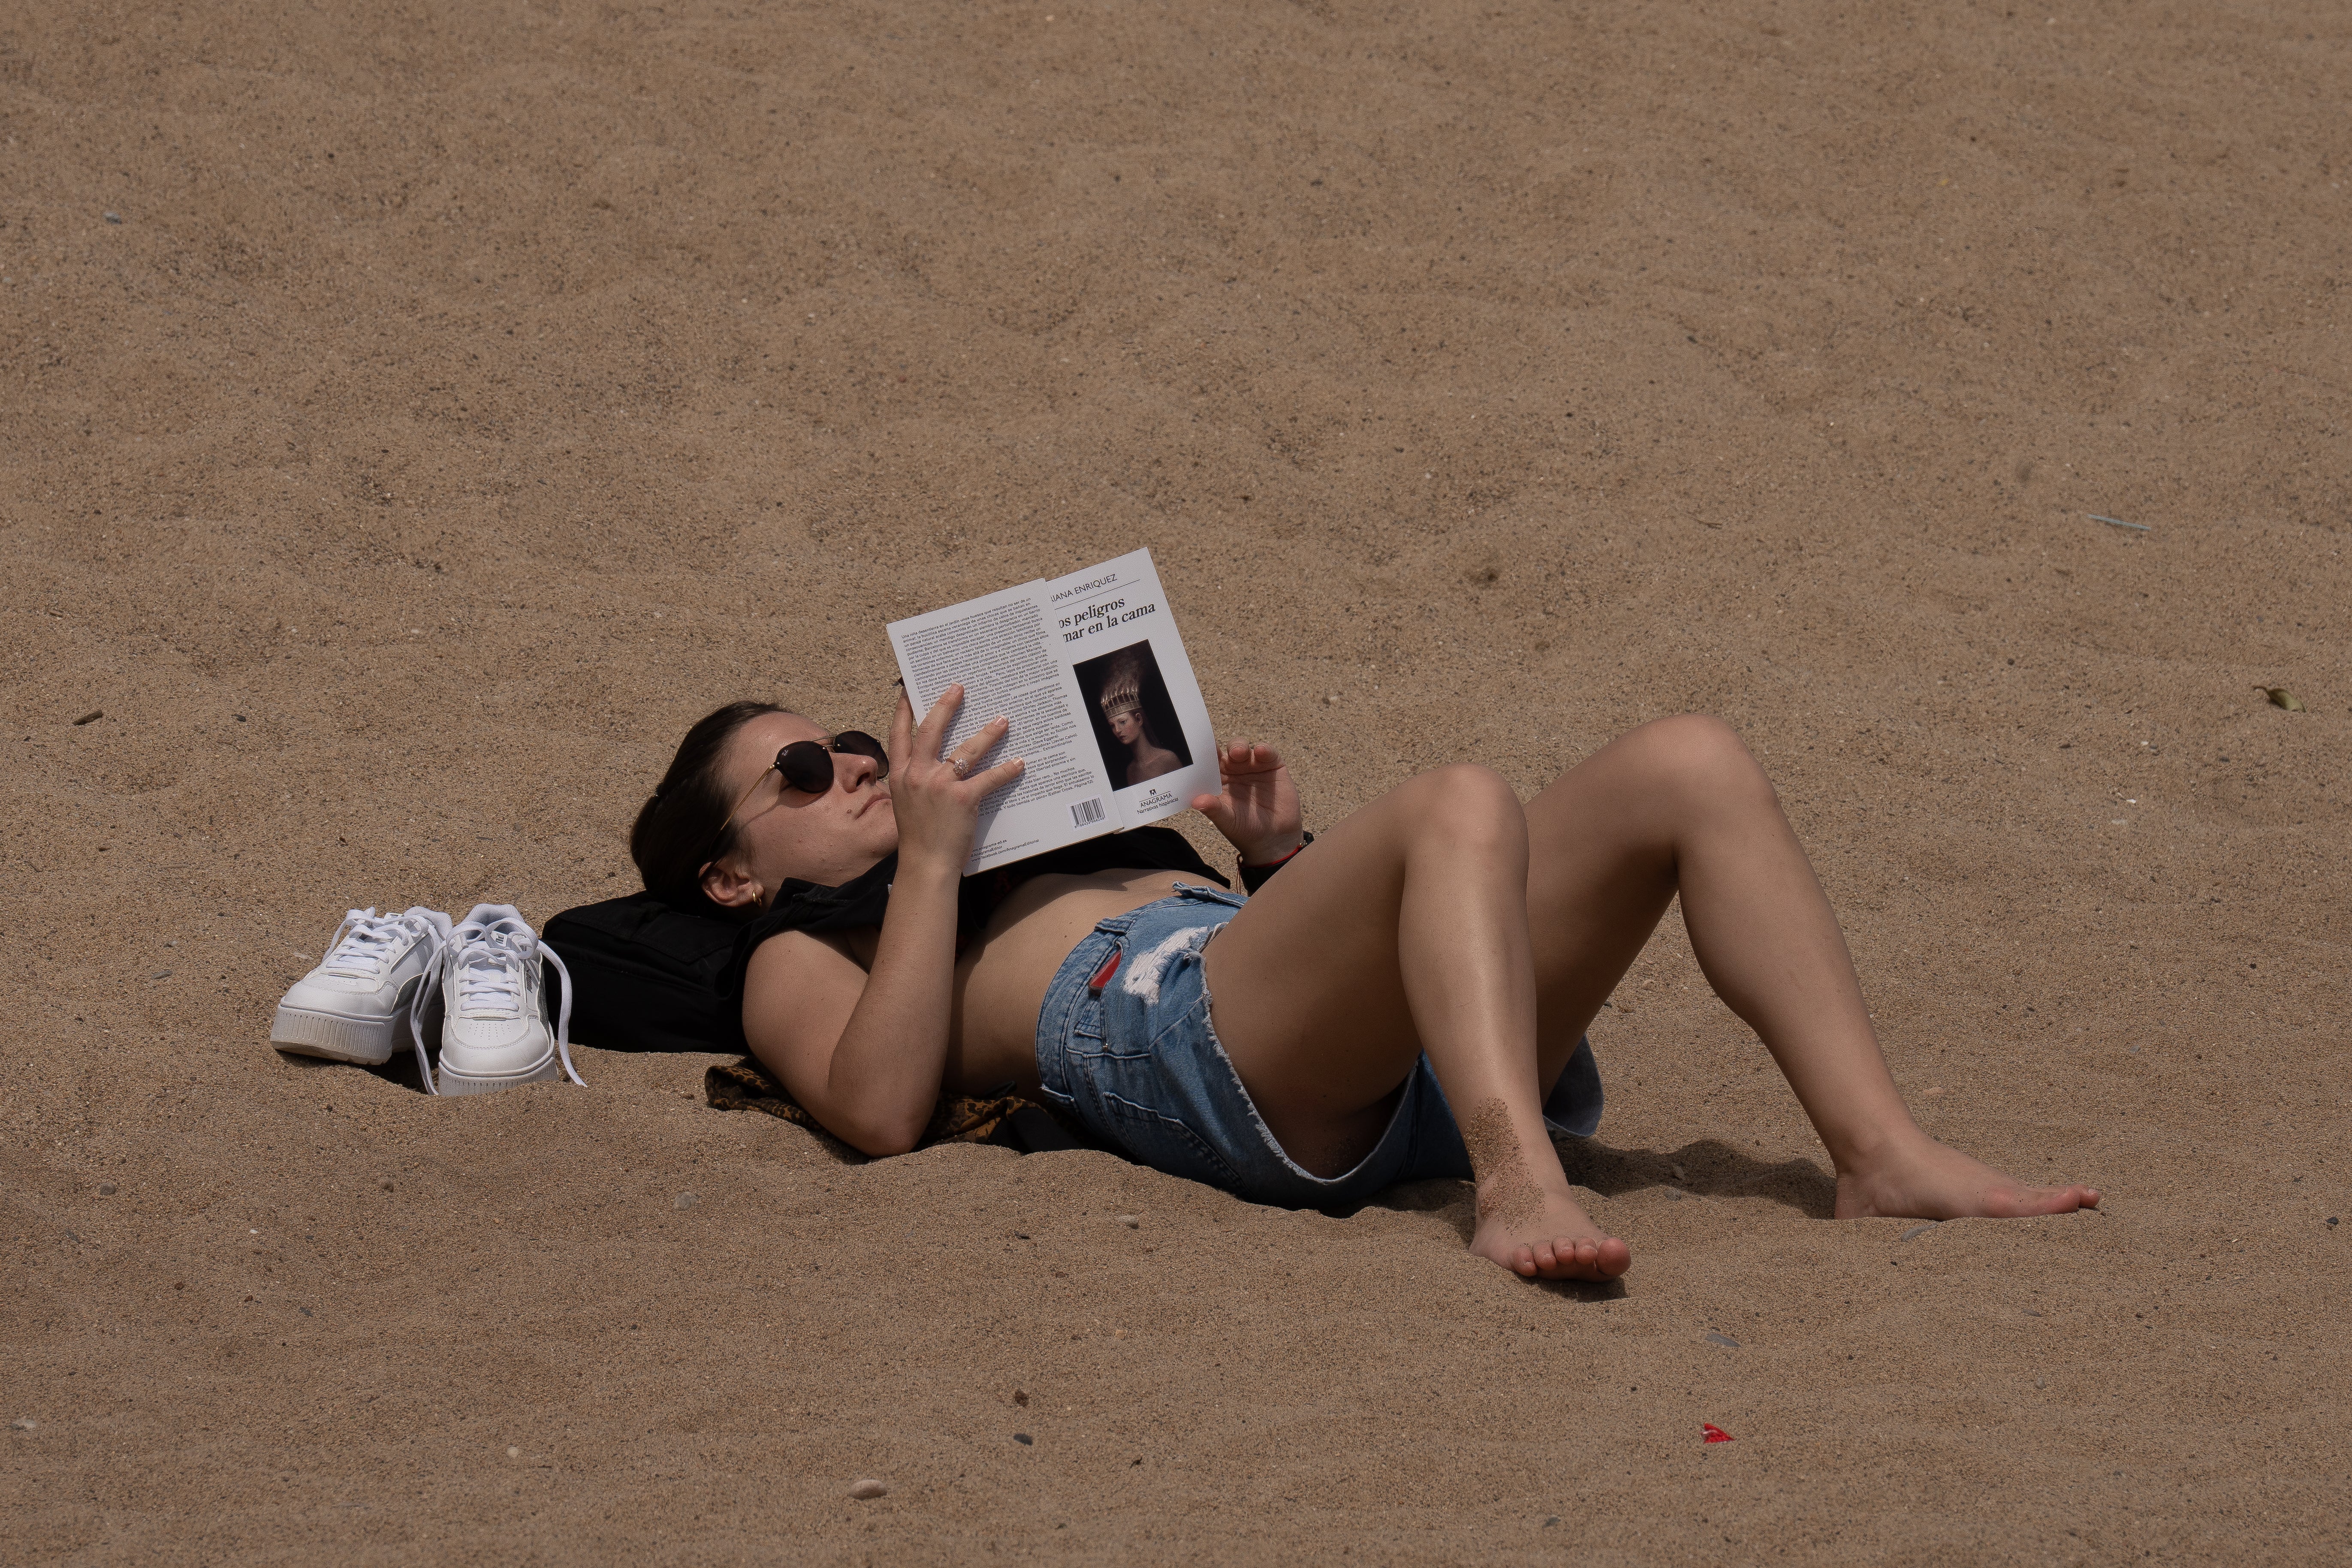 Se multiplican las webs que exhiben fotos de mujeres en topless en la playa hechas sin su consentimiento